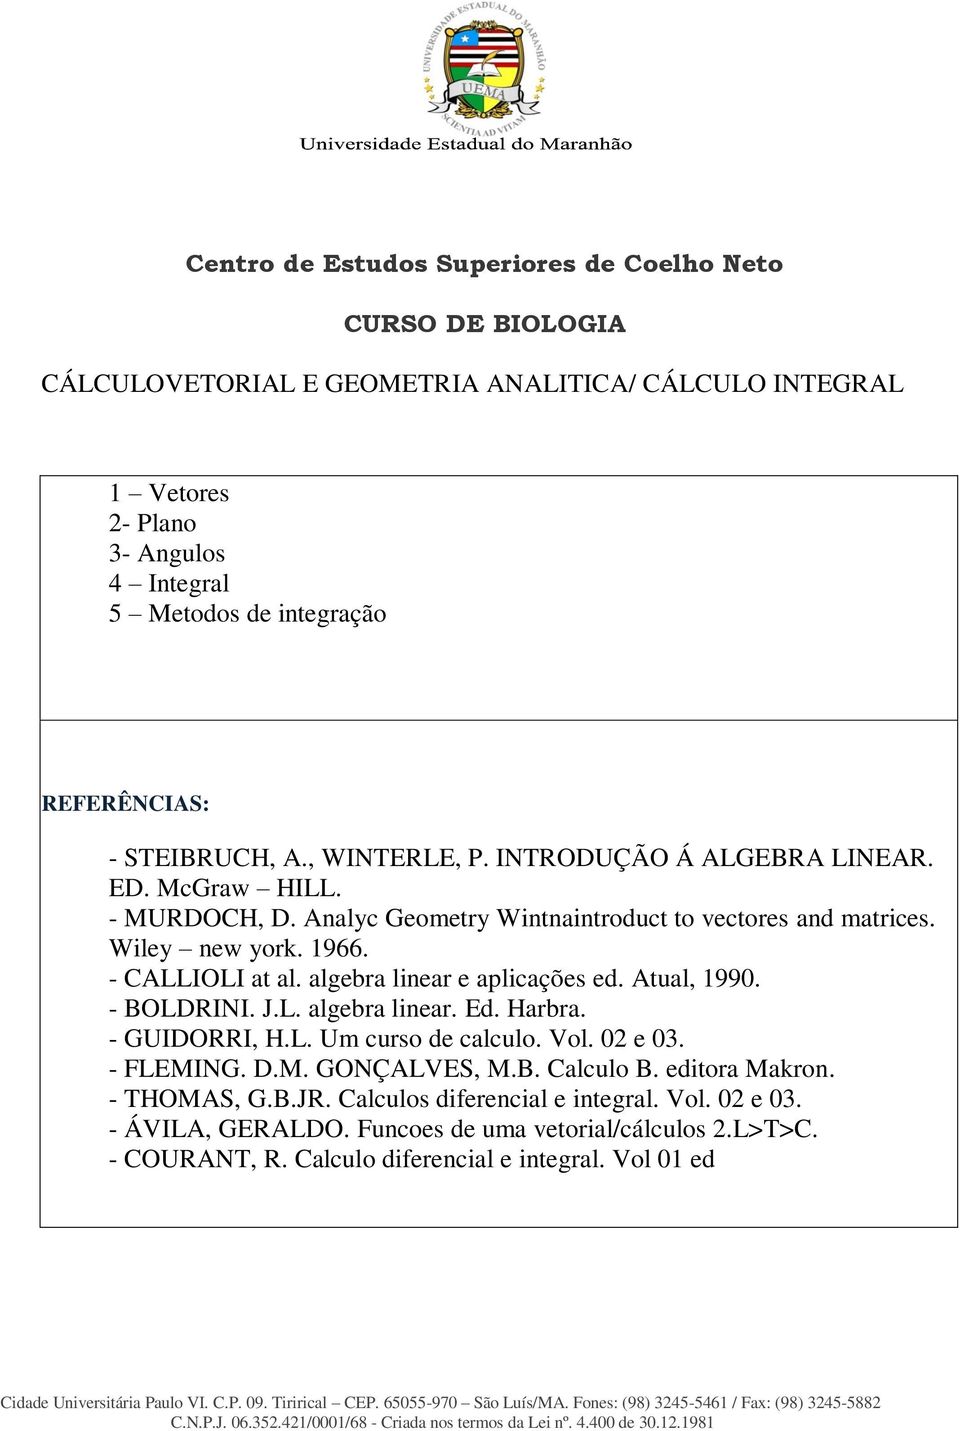 - CALLIOLI at al. algebra linear e aplicações ed. Atual, 1990. - BOLDRINI. J.L. algebra linear. Ed. Harbra. - GUIDORRI, H.L. Um curso de calculo. Vol. 02 e 03. - FLEMING. D.M. GONÇALVES, M.B. Calculo B.